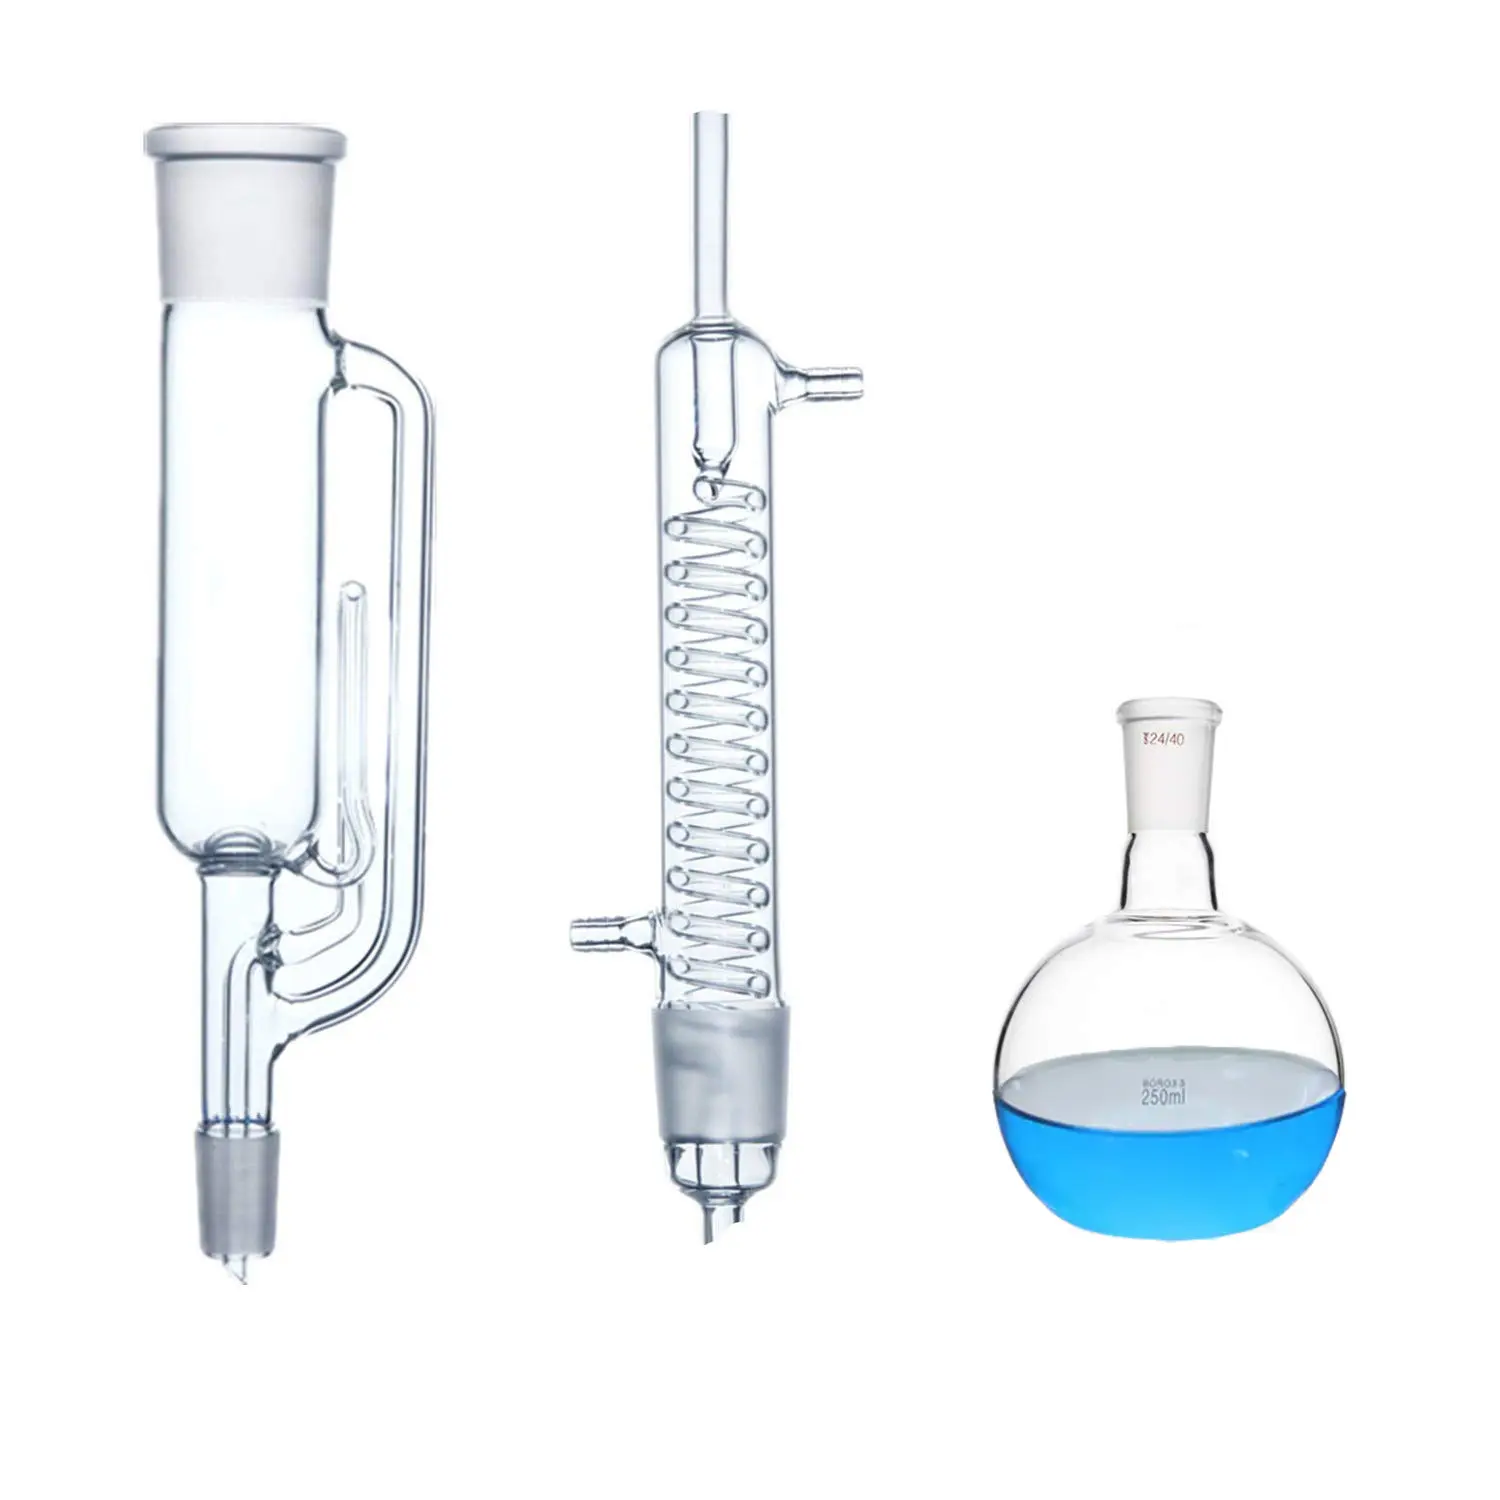 Apparecchio per l'estrazione di Soxhlet in vetro borosilicato, composto da boccetta, estrattore e condensatore per uso in laboratorio